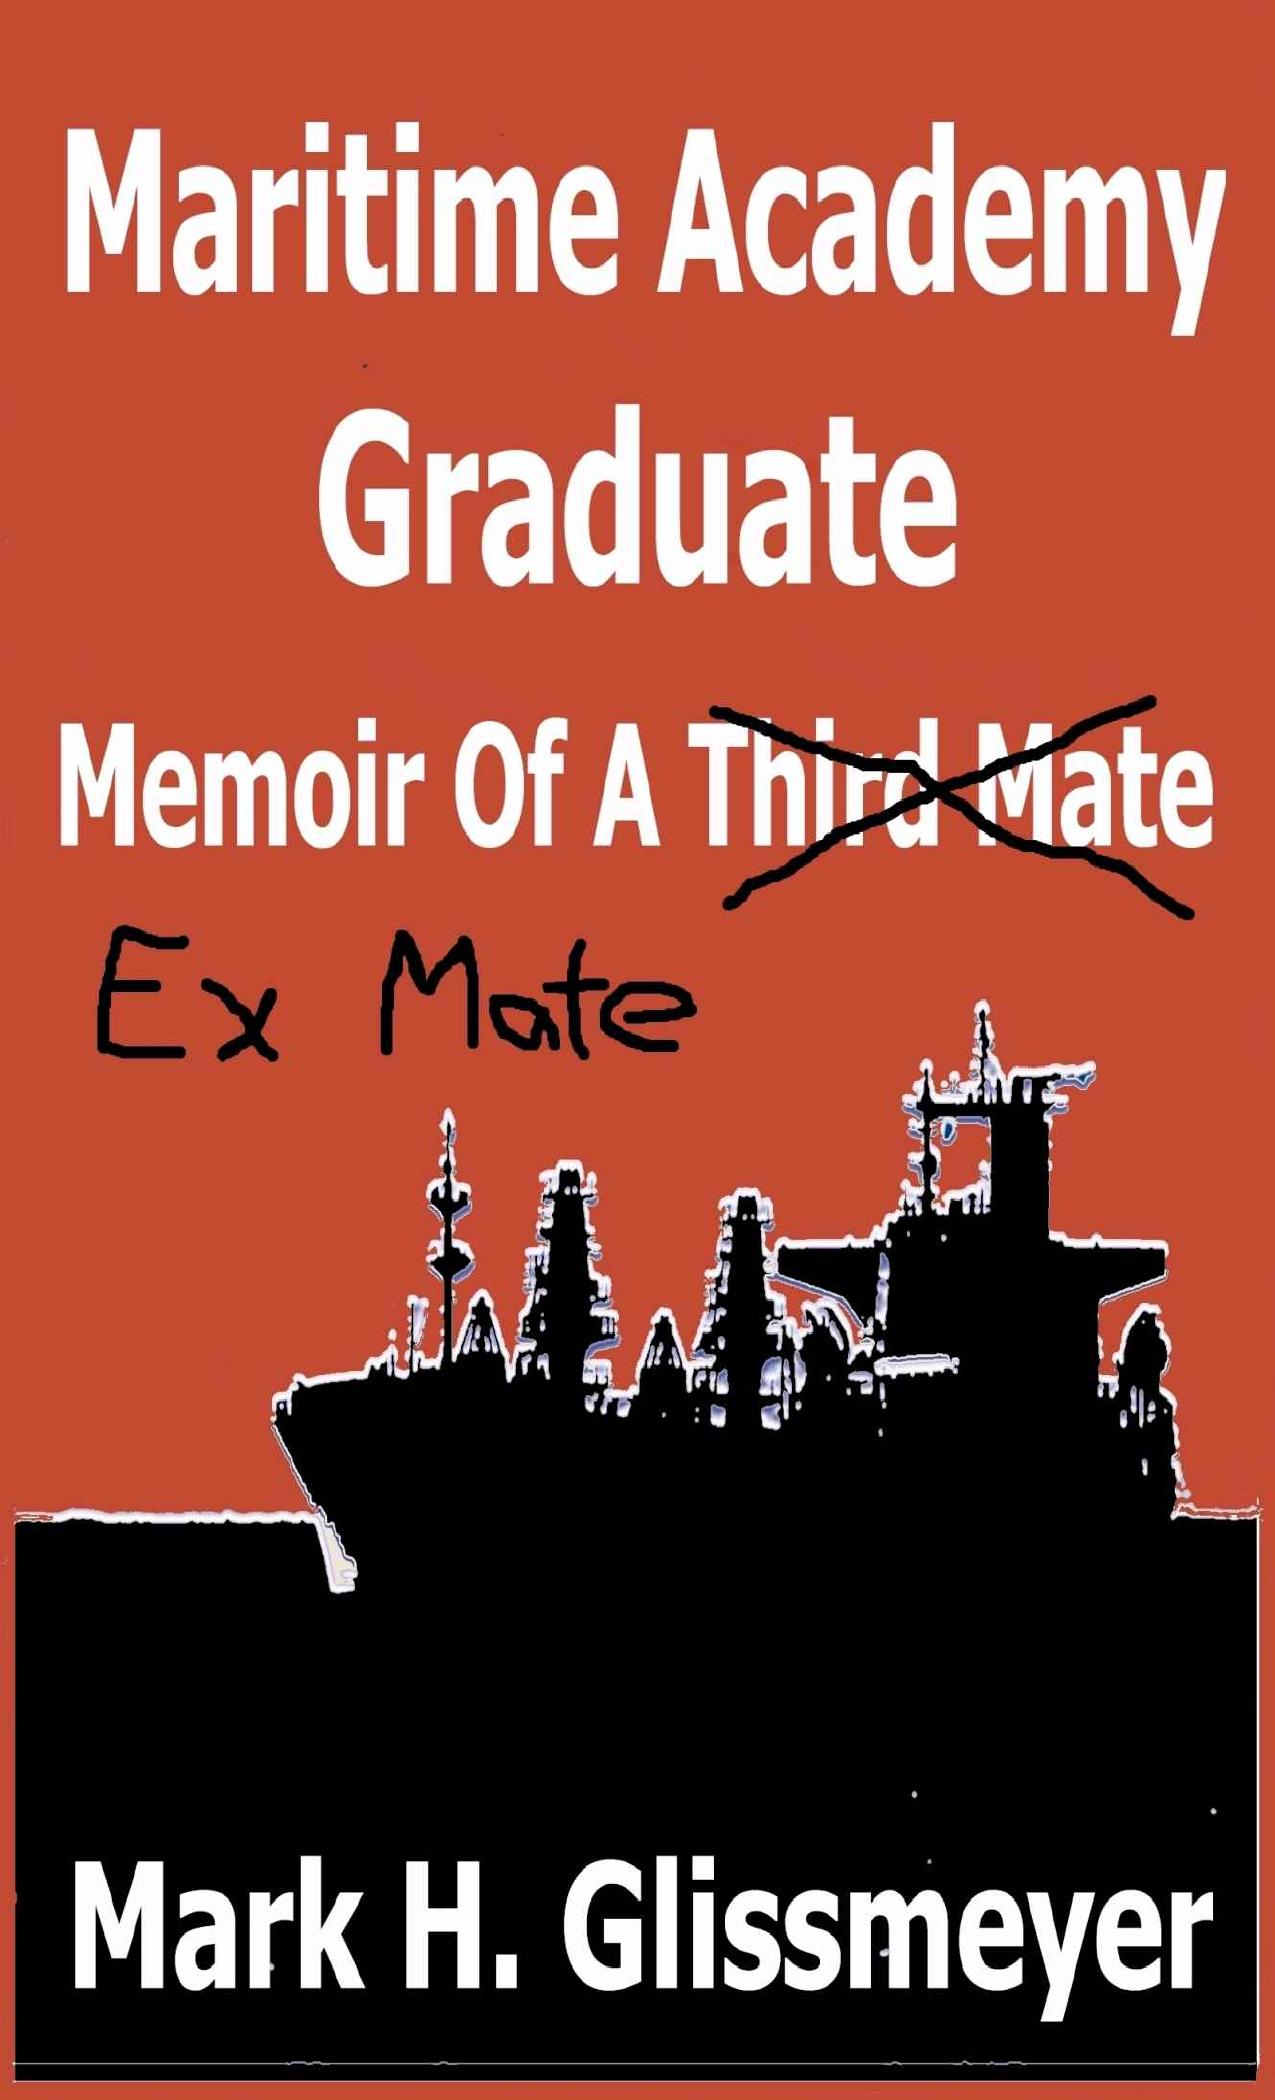 Maritime Academy Graduate: Memoir of a Third Mate by Mark H. Glissmeyer